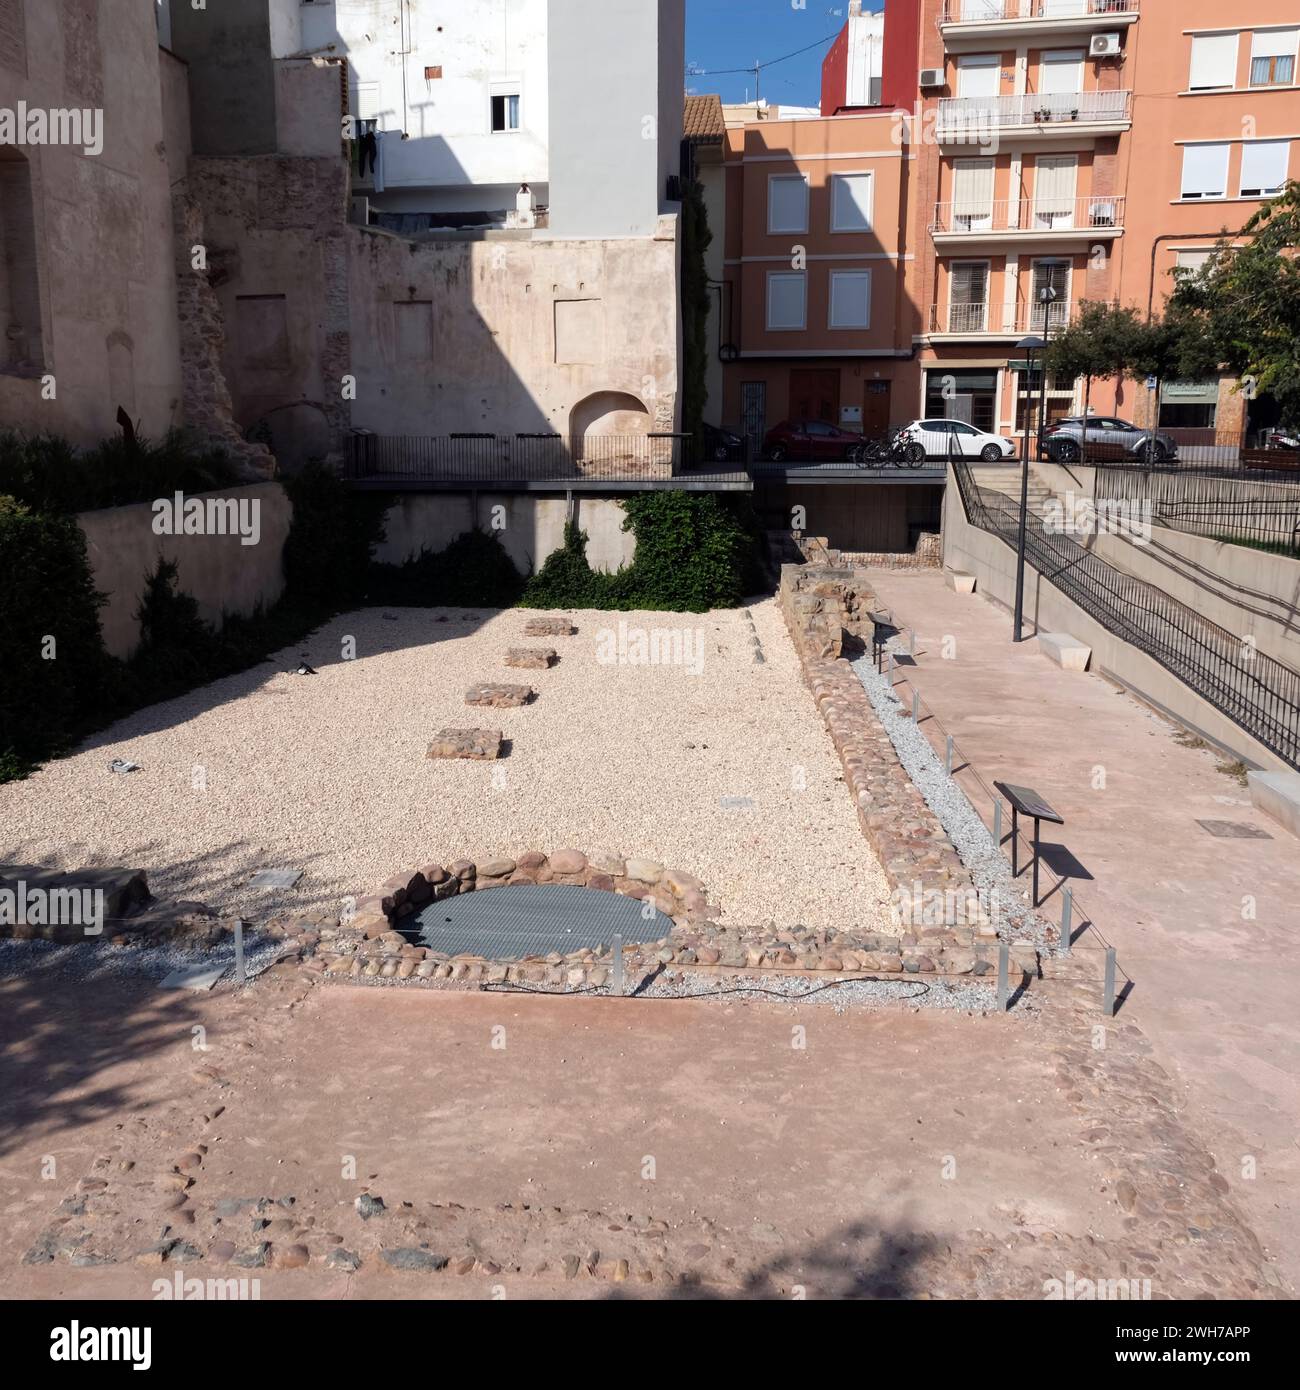 Ruines romaines de Plaça del Fòrum, Sagunto, Valence, Espagne, Europe Banque D'Images